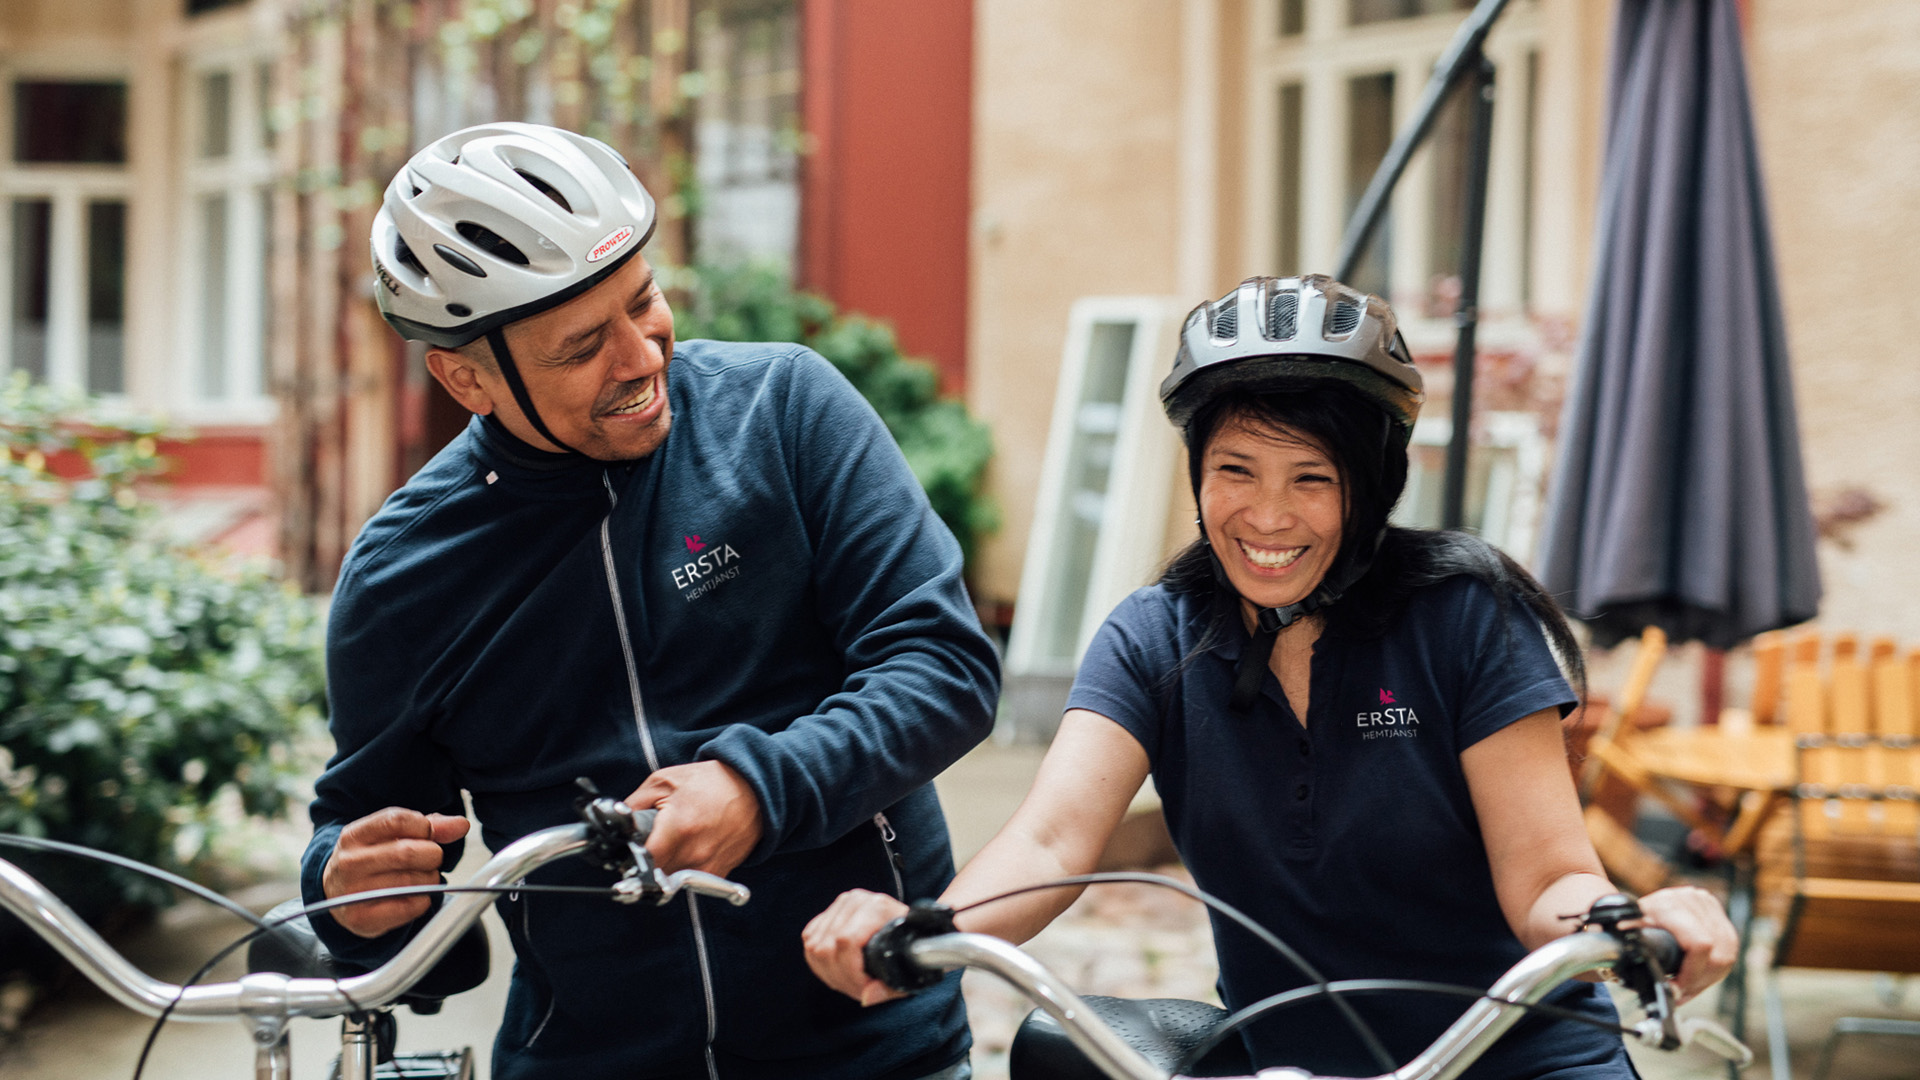 två medarbetare från ersta hemtjänst skrattar när de står vid sina cyklar